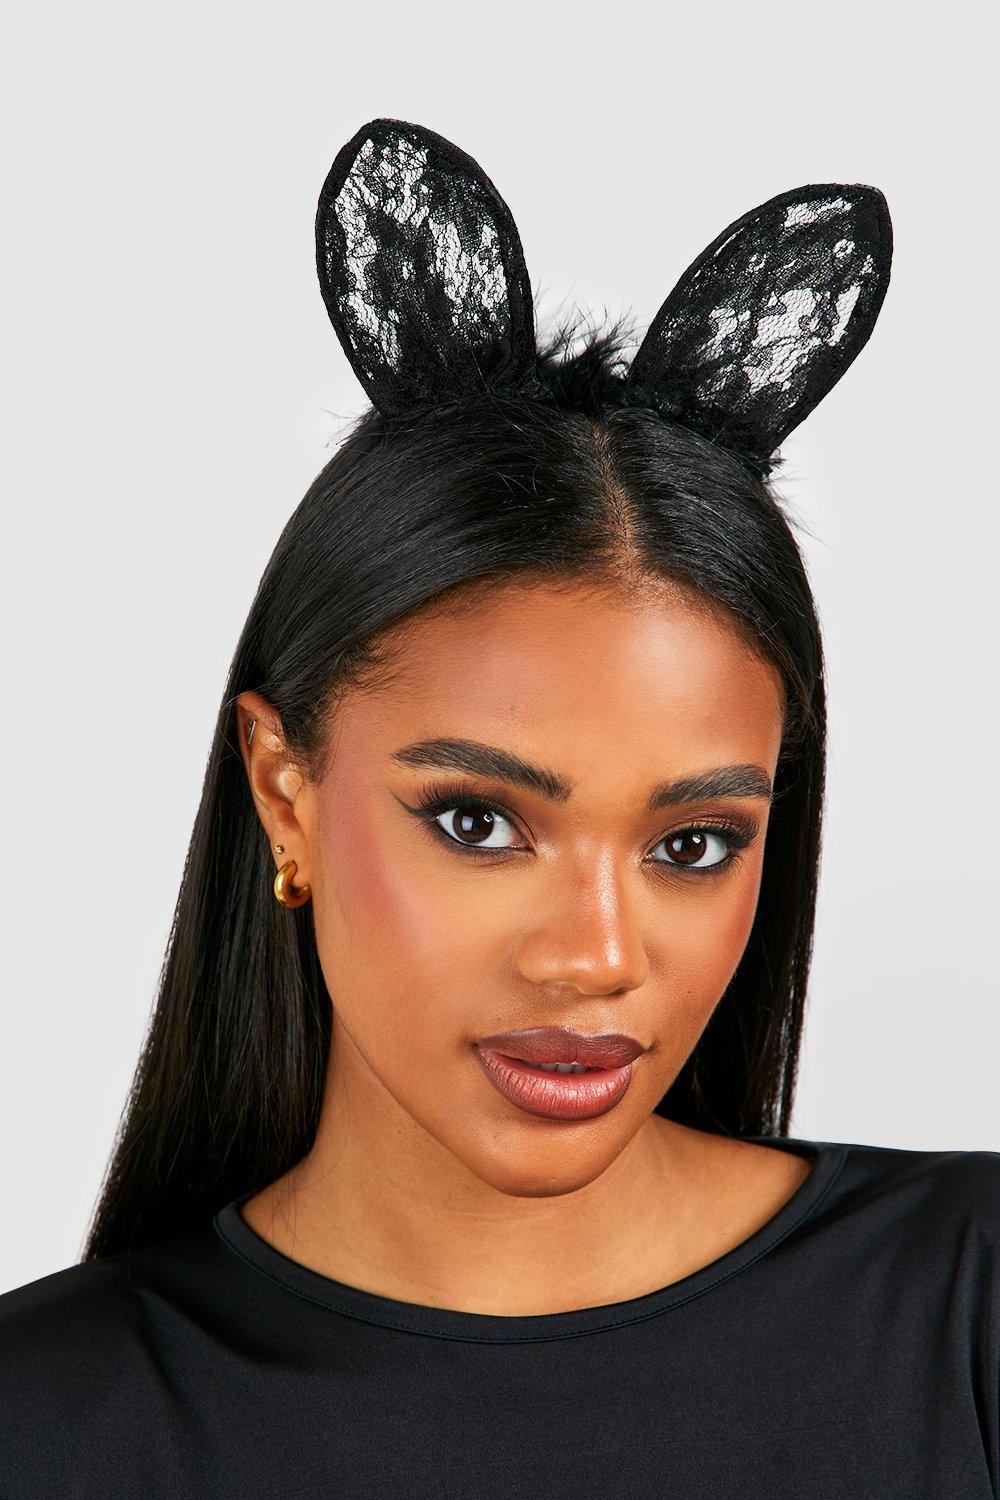 Black lace cat ears